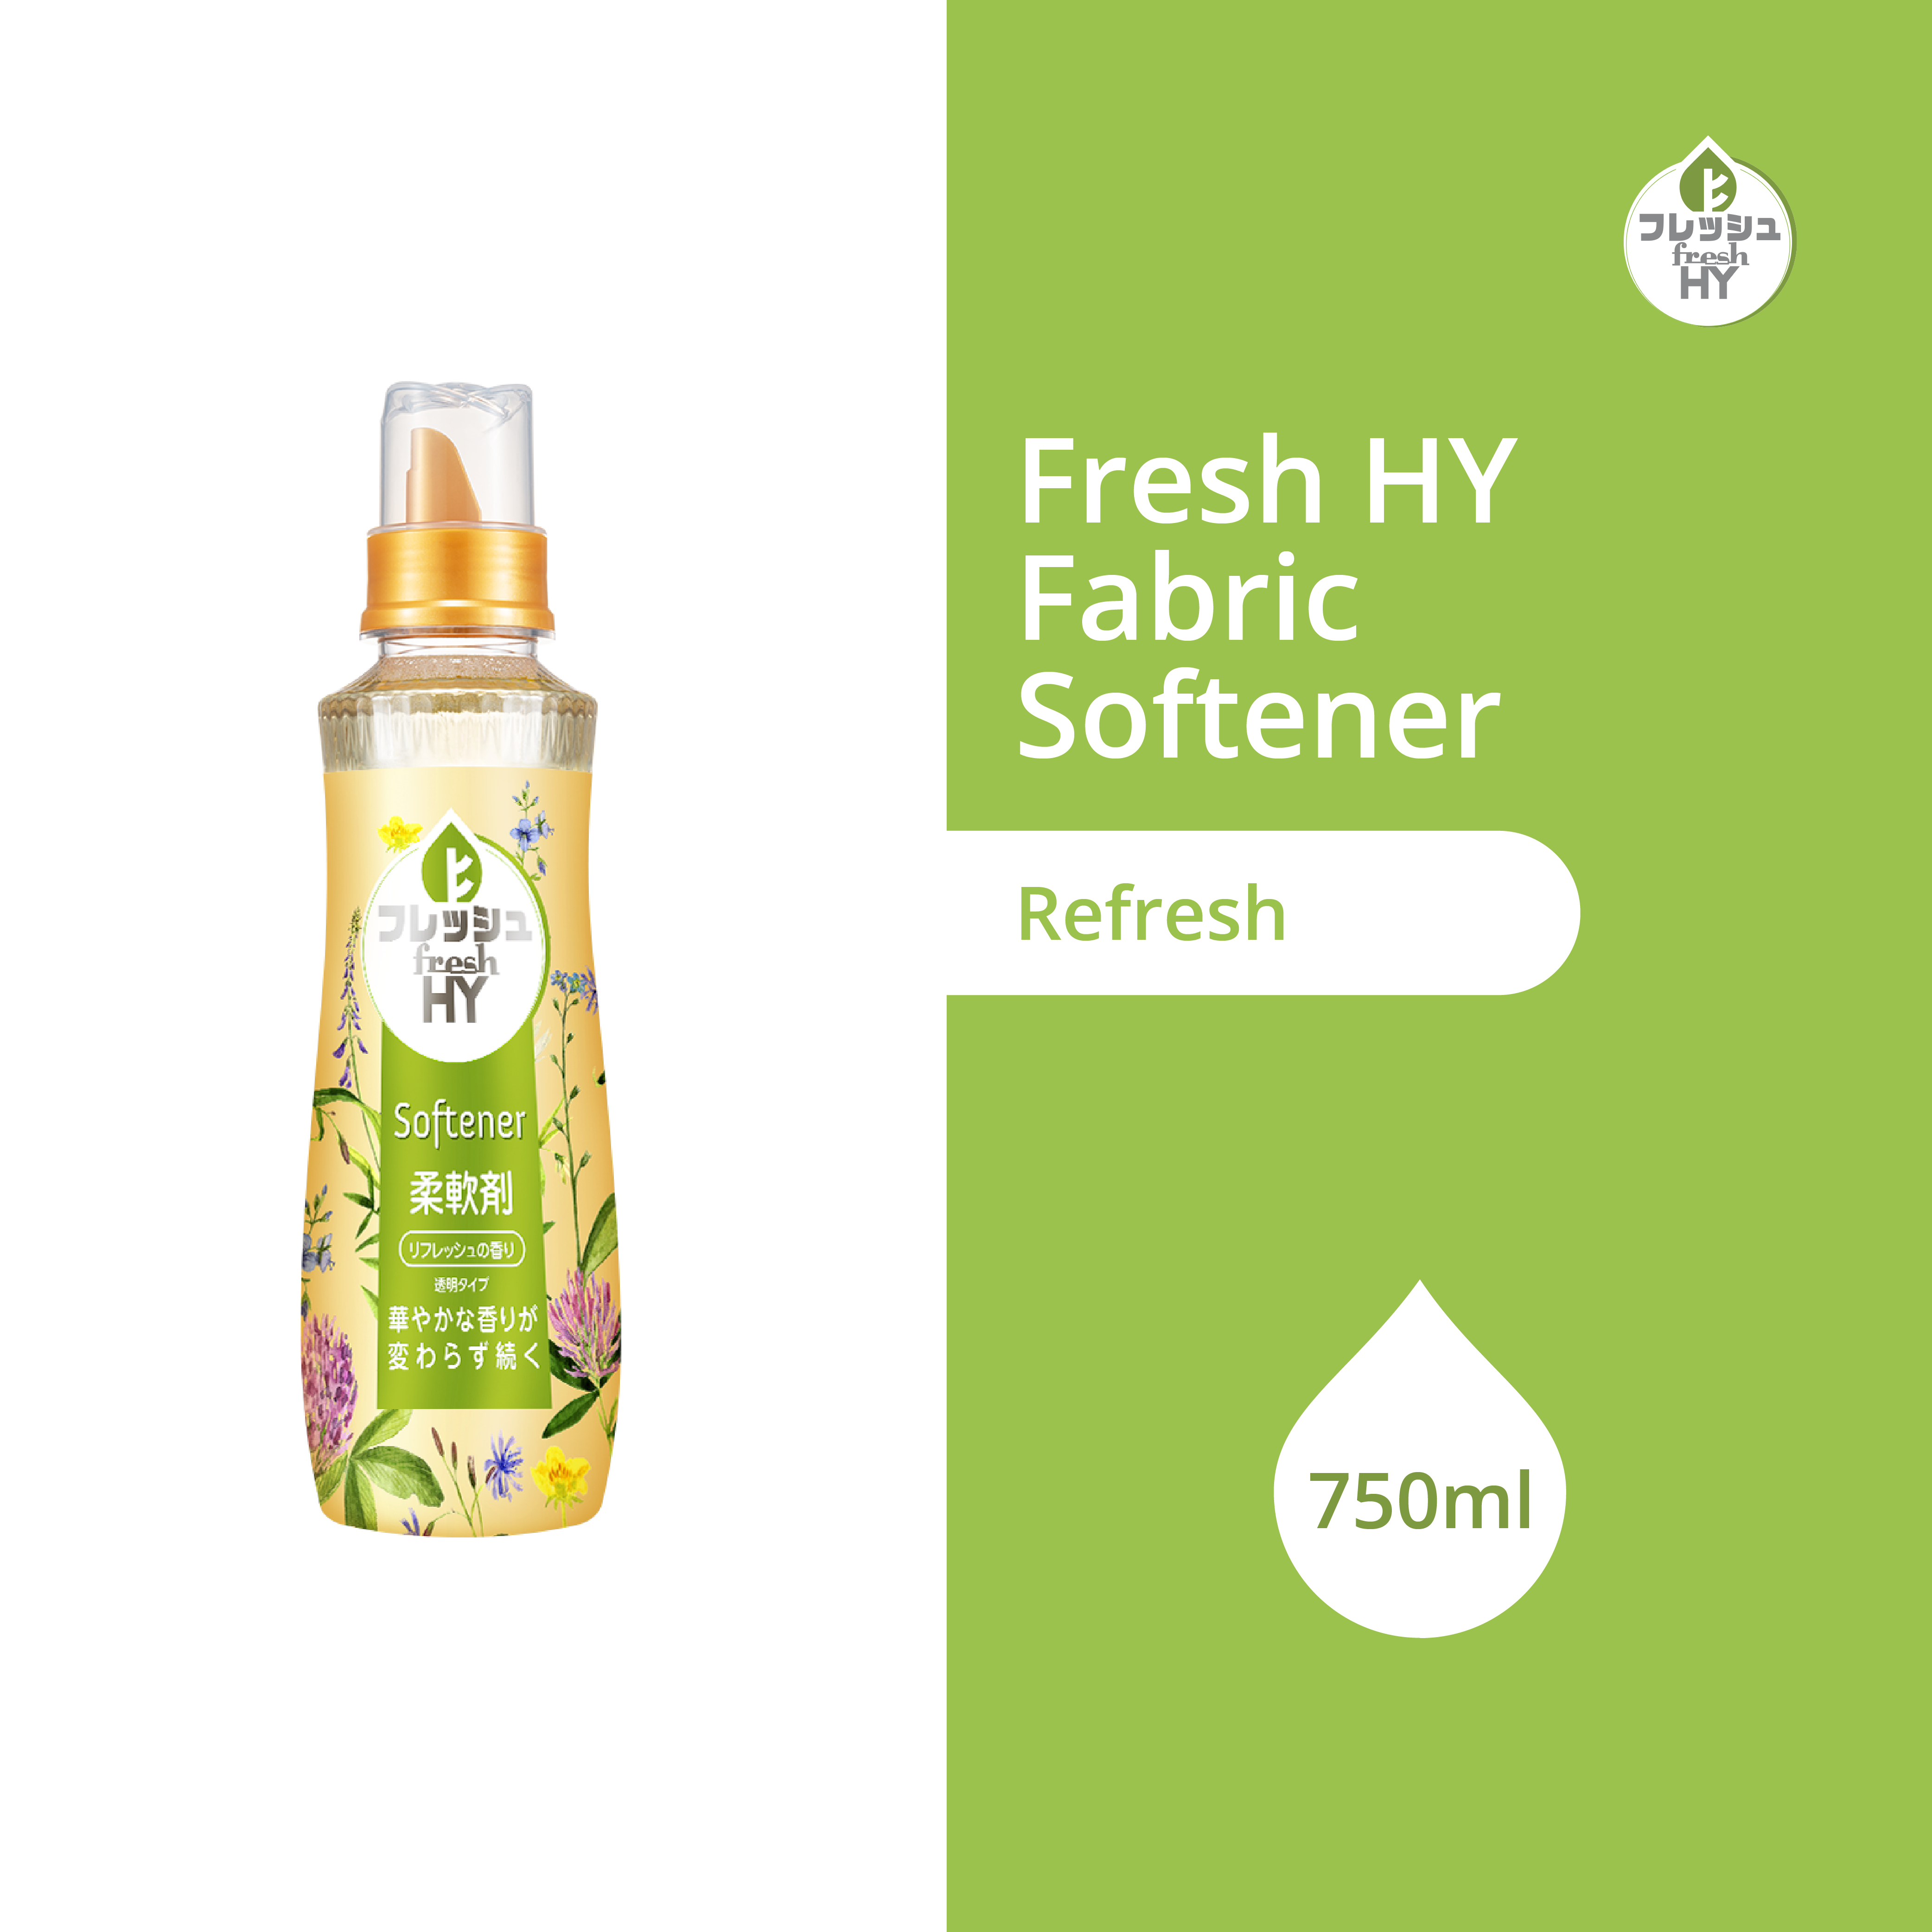 Fresh HY Fabric Softener 750ml – Refresh